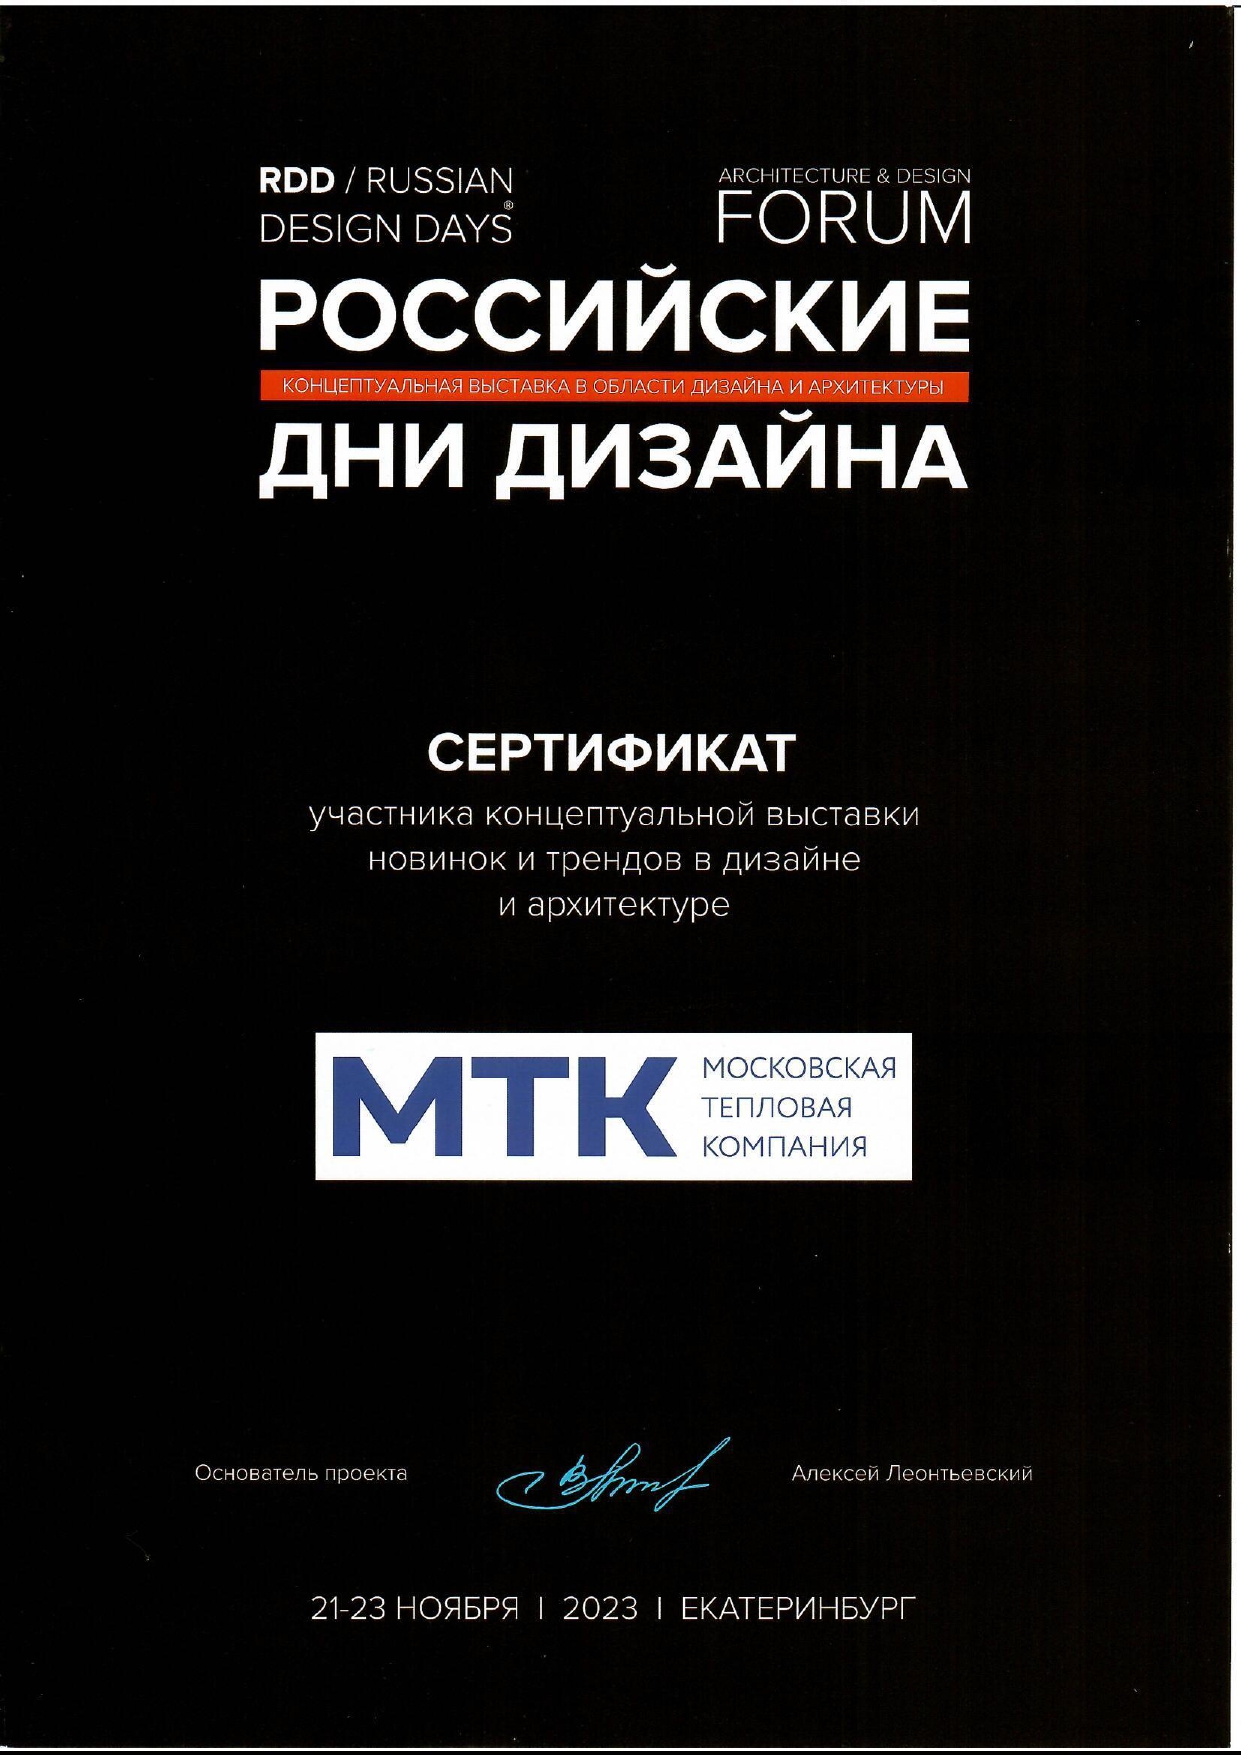 Сертификат участника выставки Российские дни дизайна